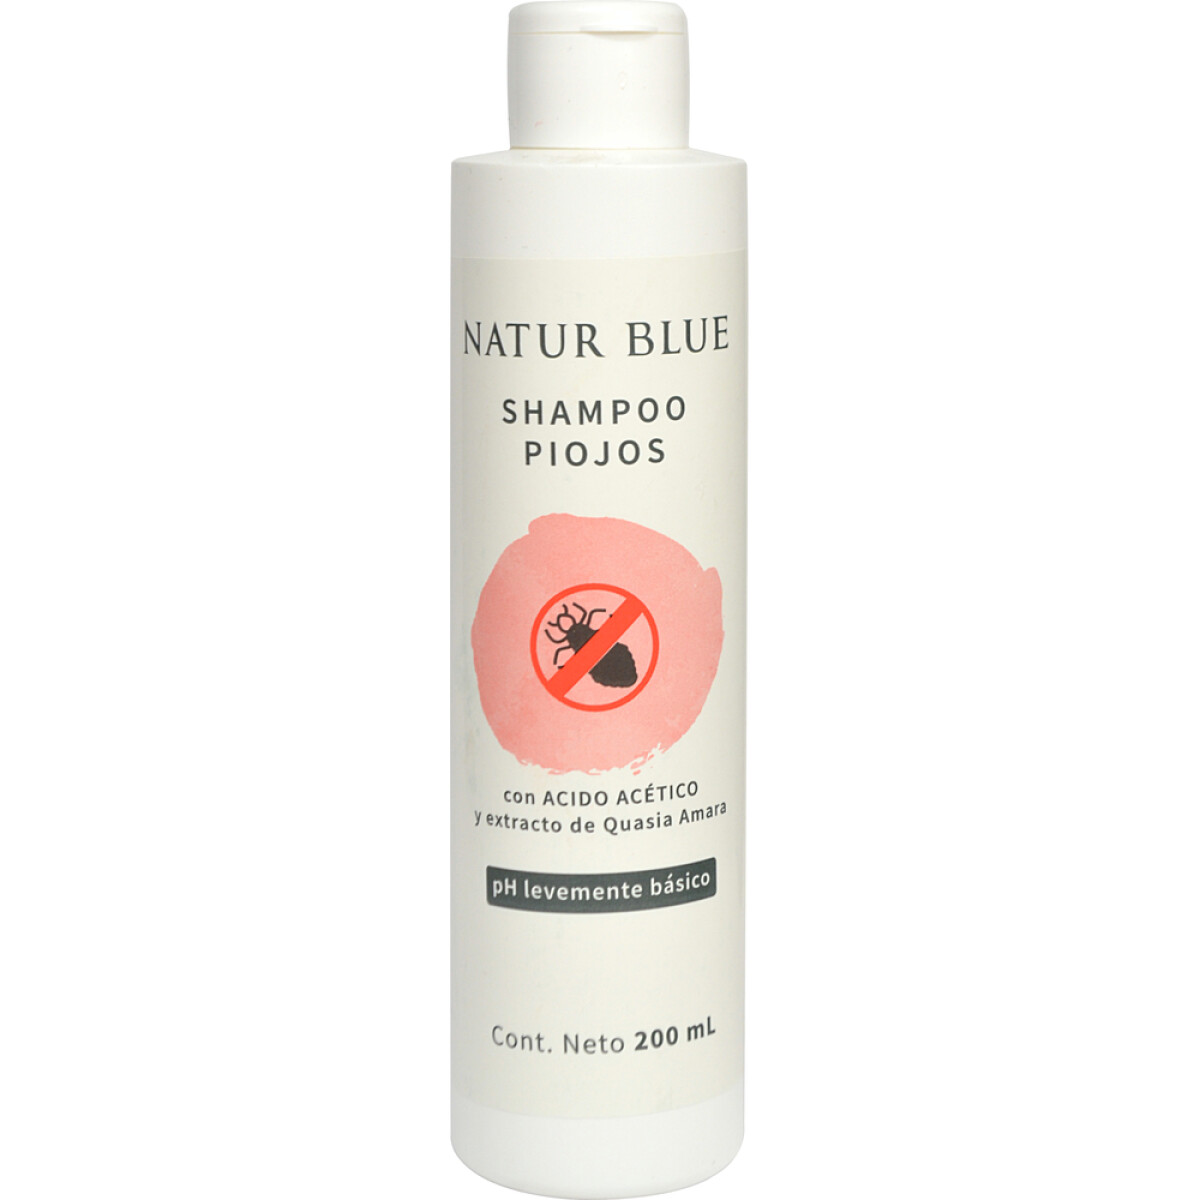 Shampoo para Piojos NATUR BLUE 200 mL 